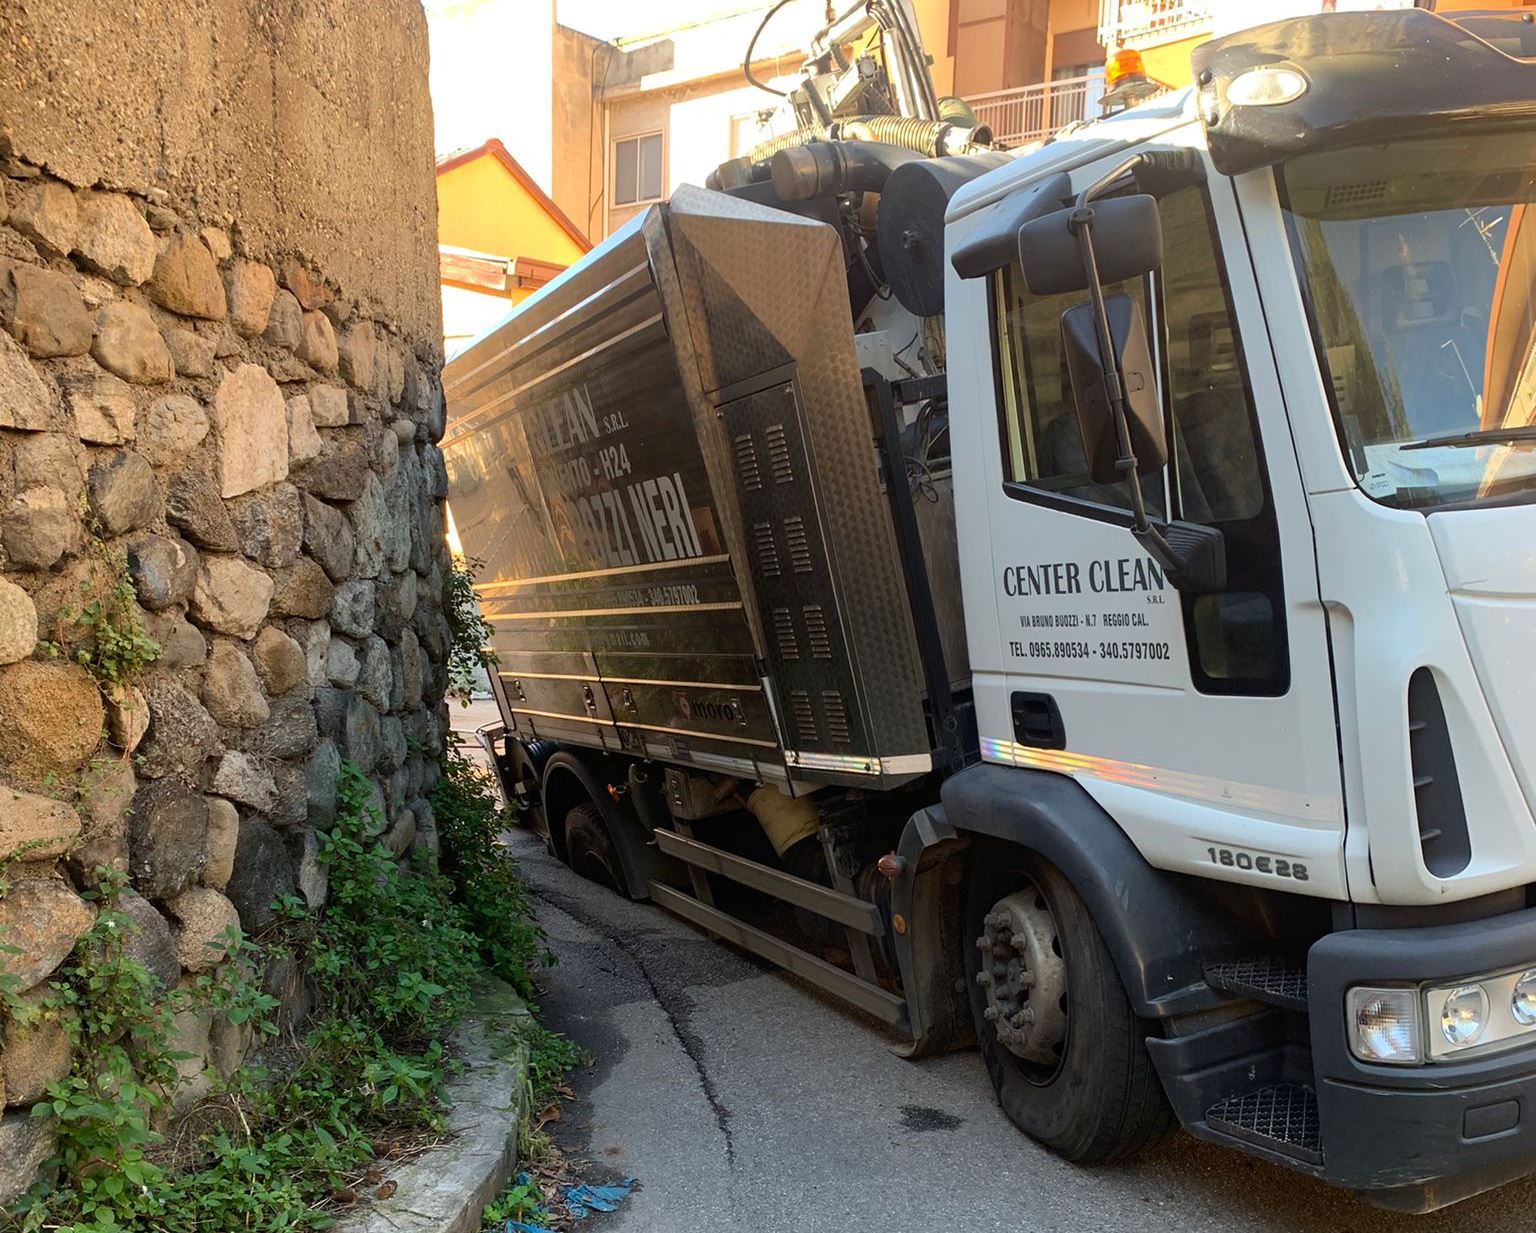 Camion sprofonda dentro buca a Reggio Calabria